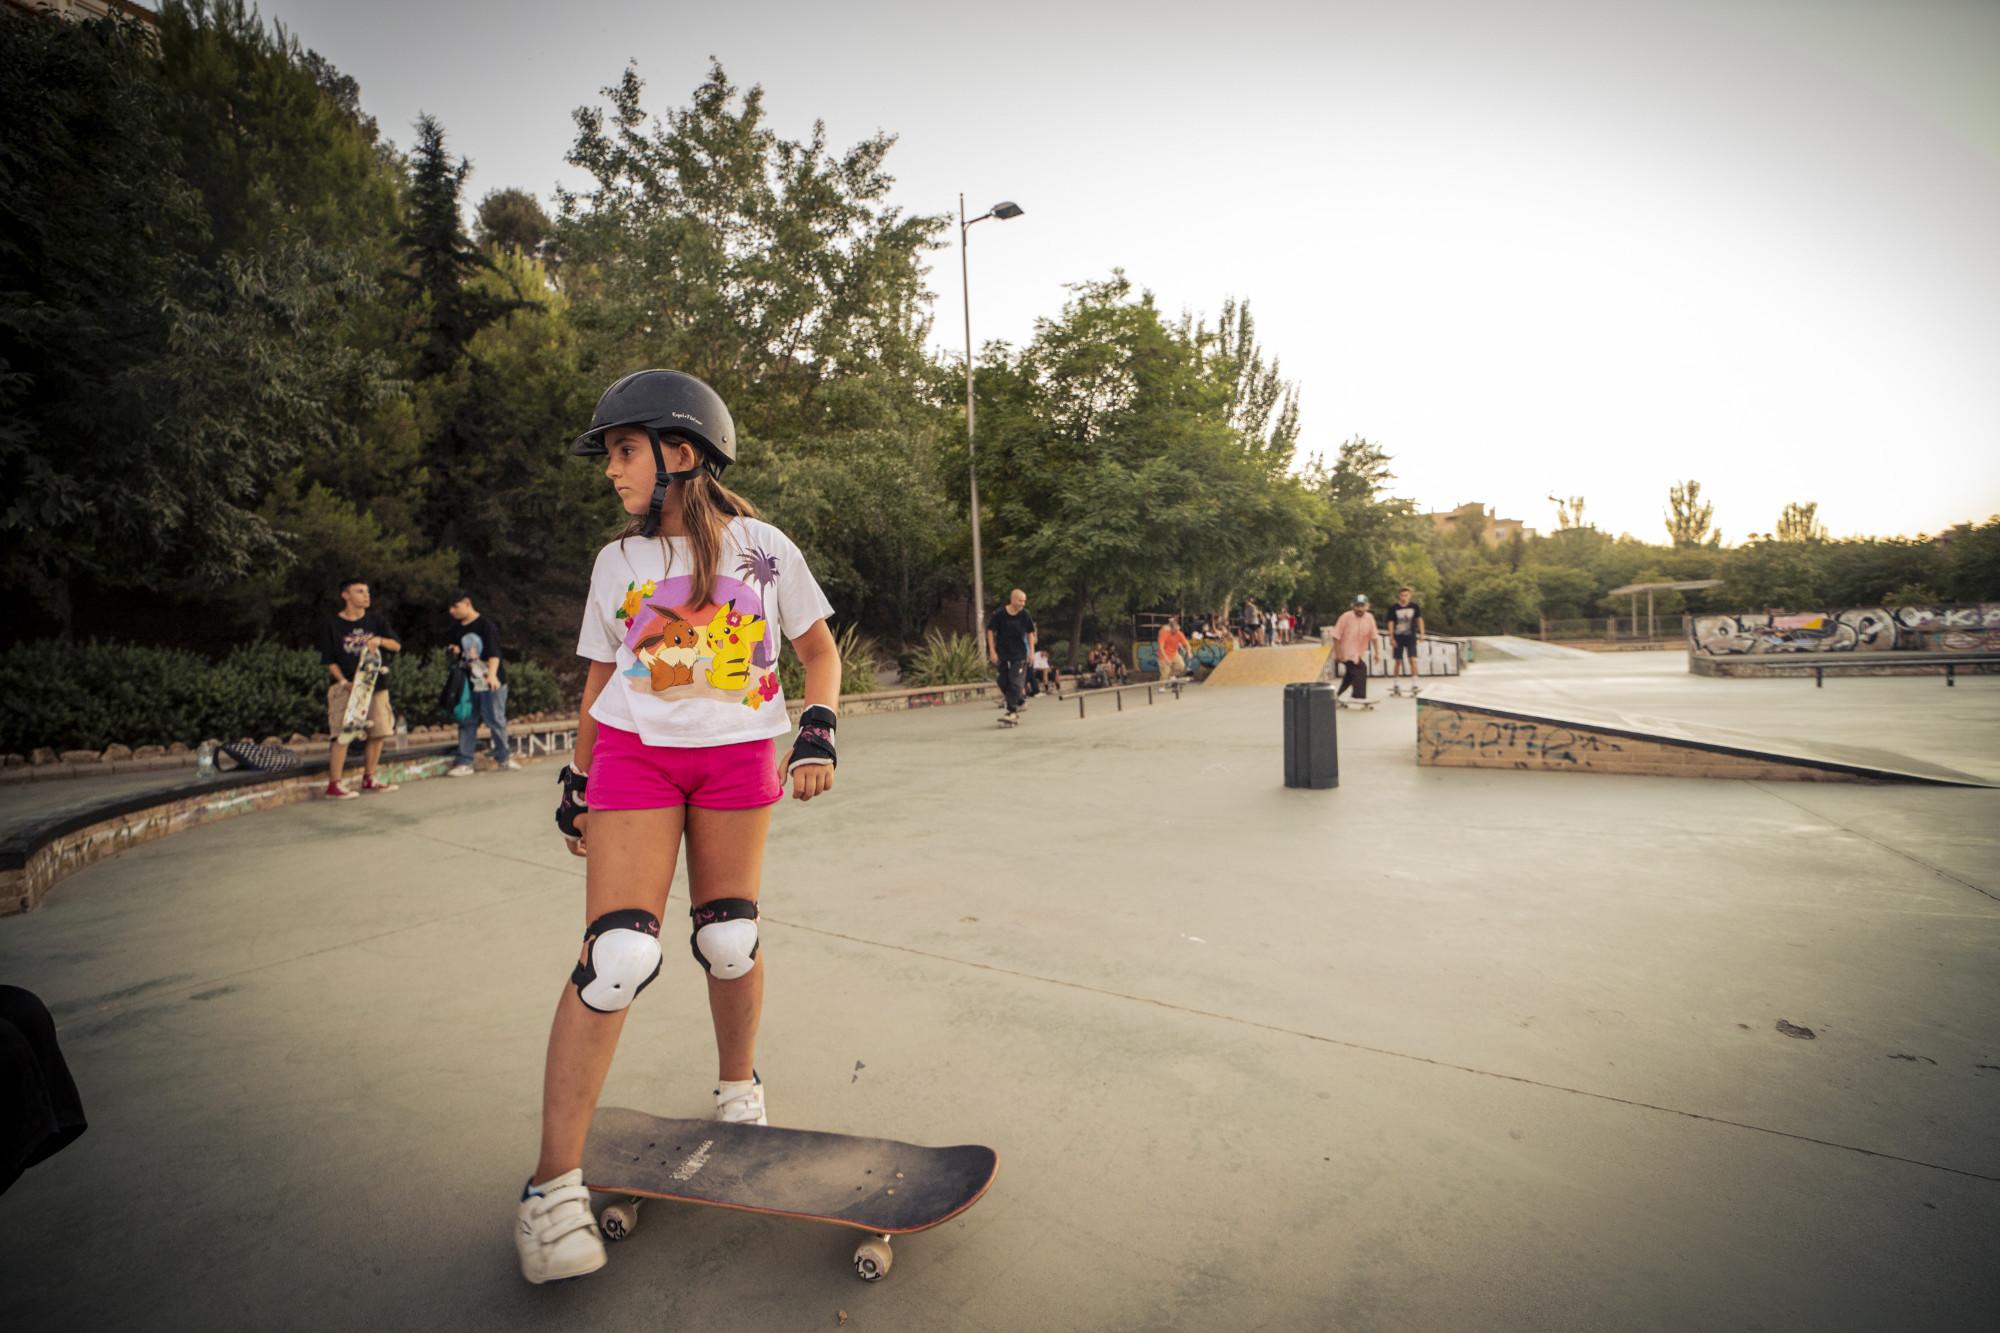 Skaters en el skatepark Bola de Oro, Granada - 7